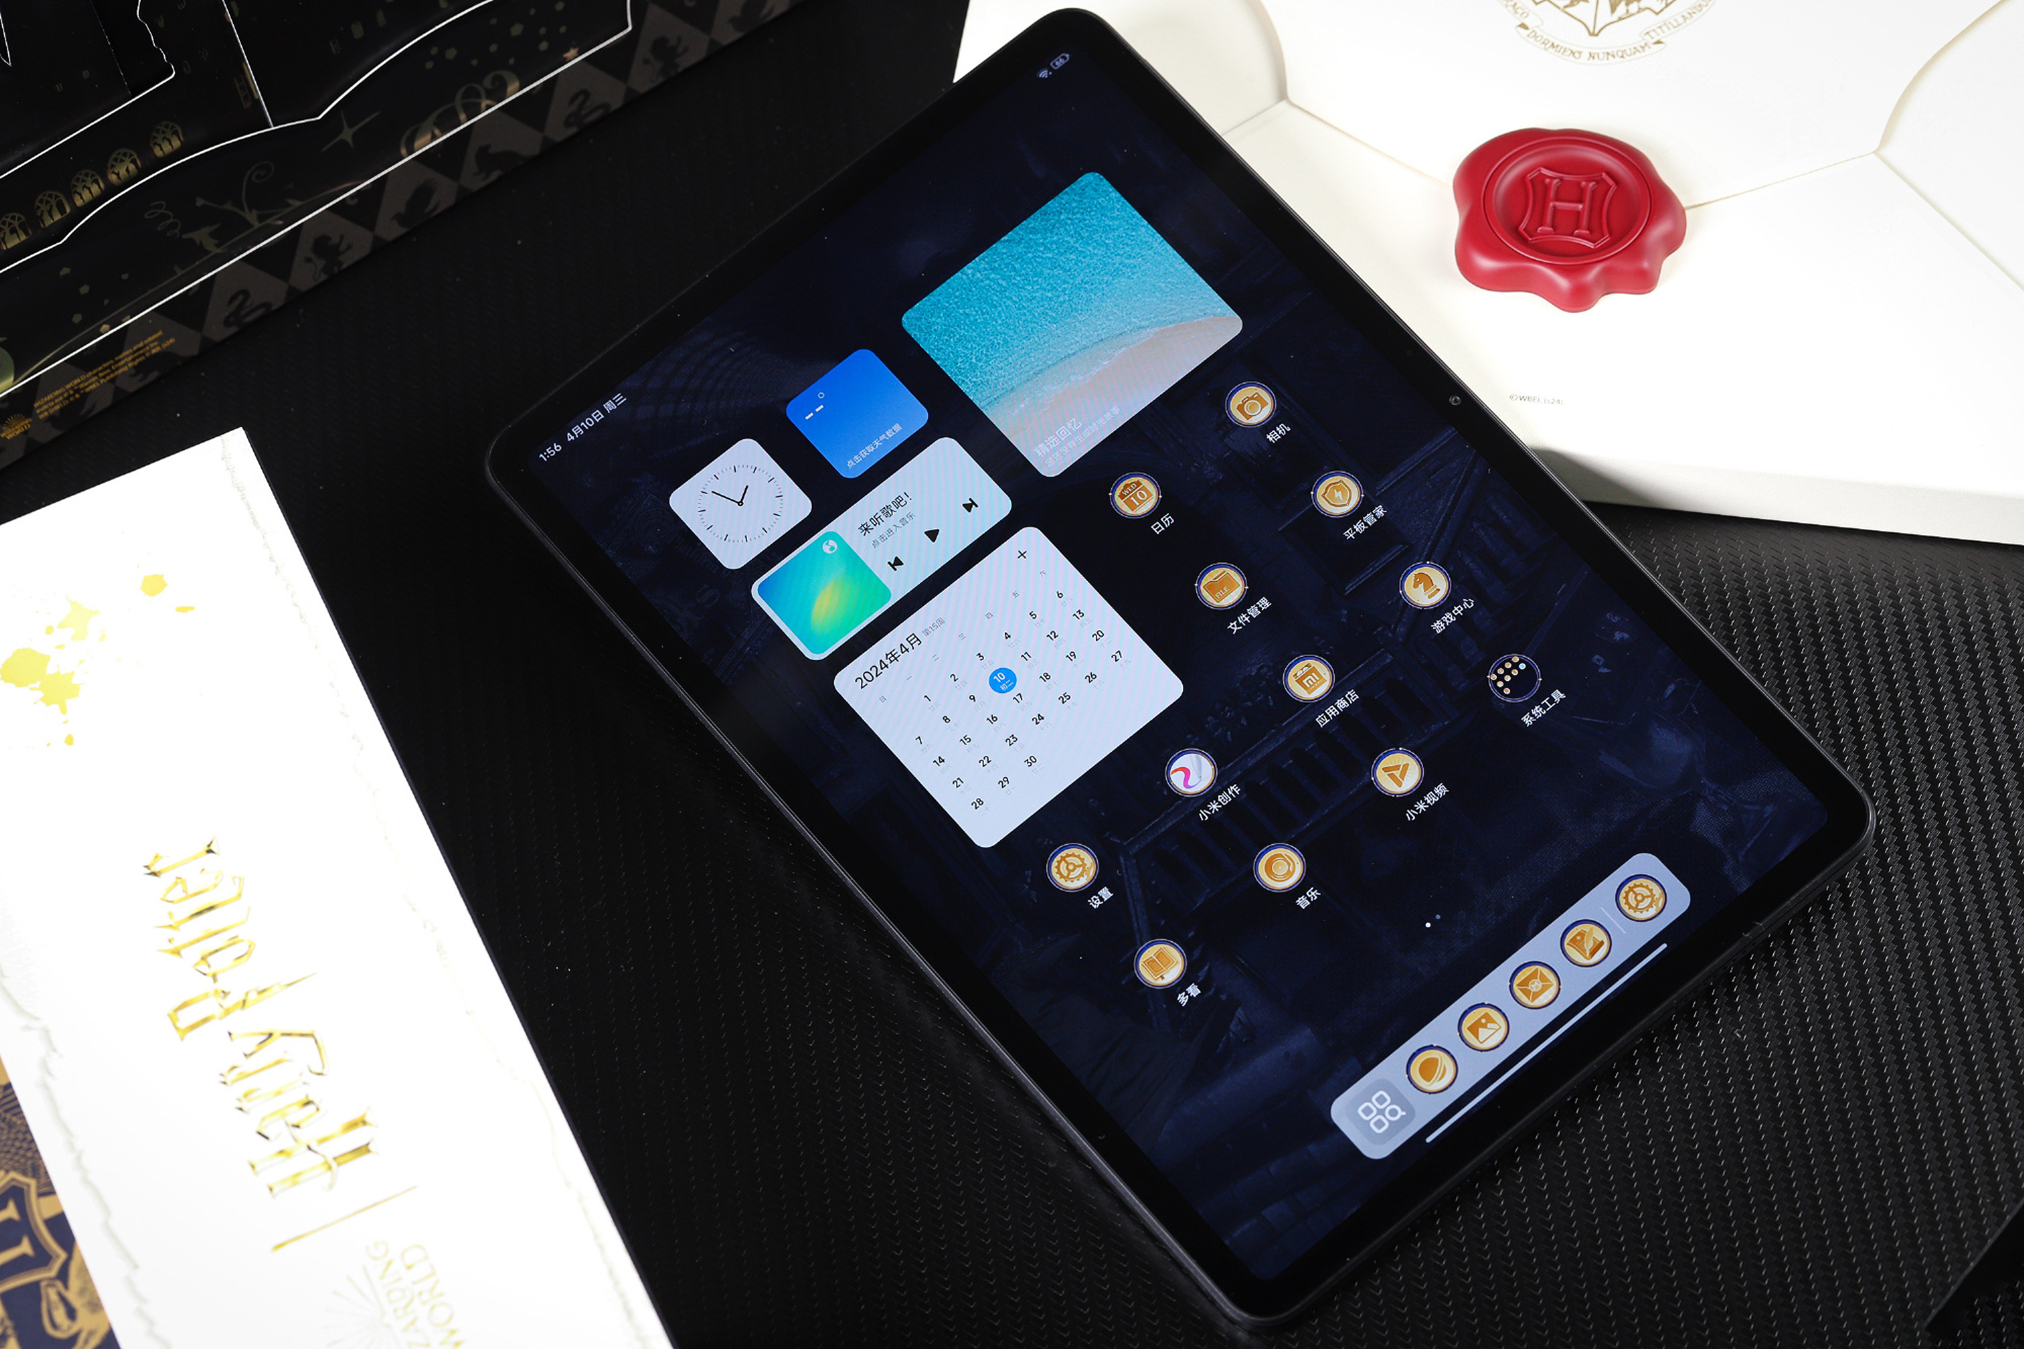 Cận cảnh máy tính bảng 12 inch giá rẻ chỉ 5 triệu đồng của Xiaomi: Thiết kế đẹp như iPad, có cả bản Harry Potter đặc biệt cho các Potterheads, pin khủng 10.000mAh- Ảnh 27.